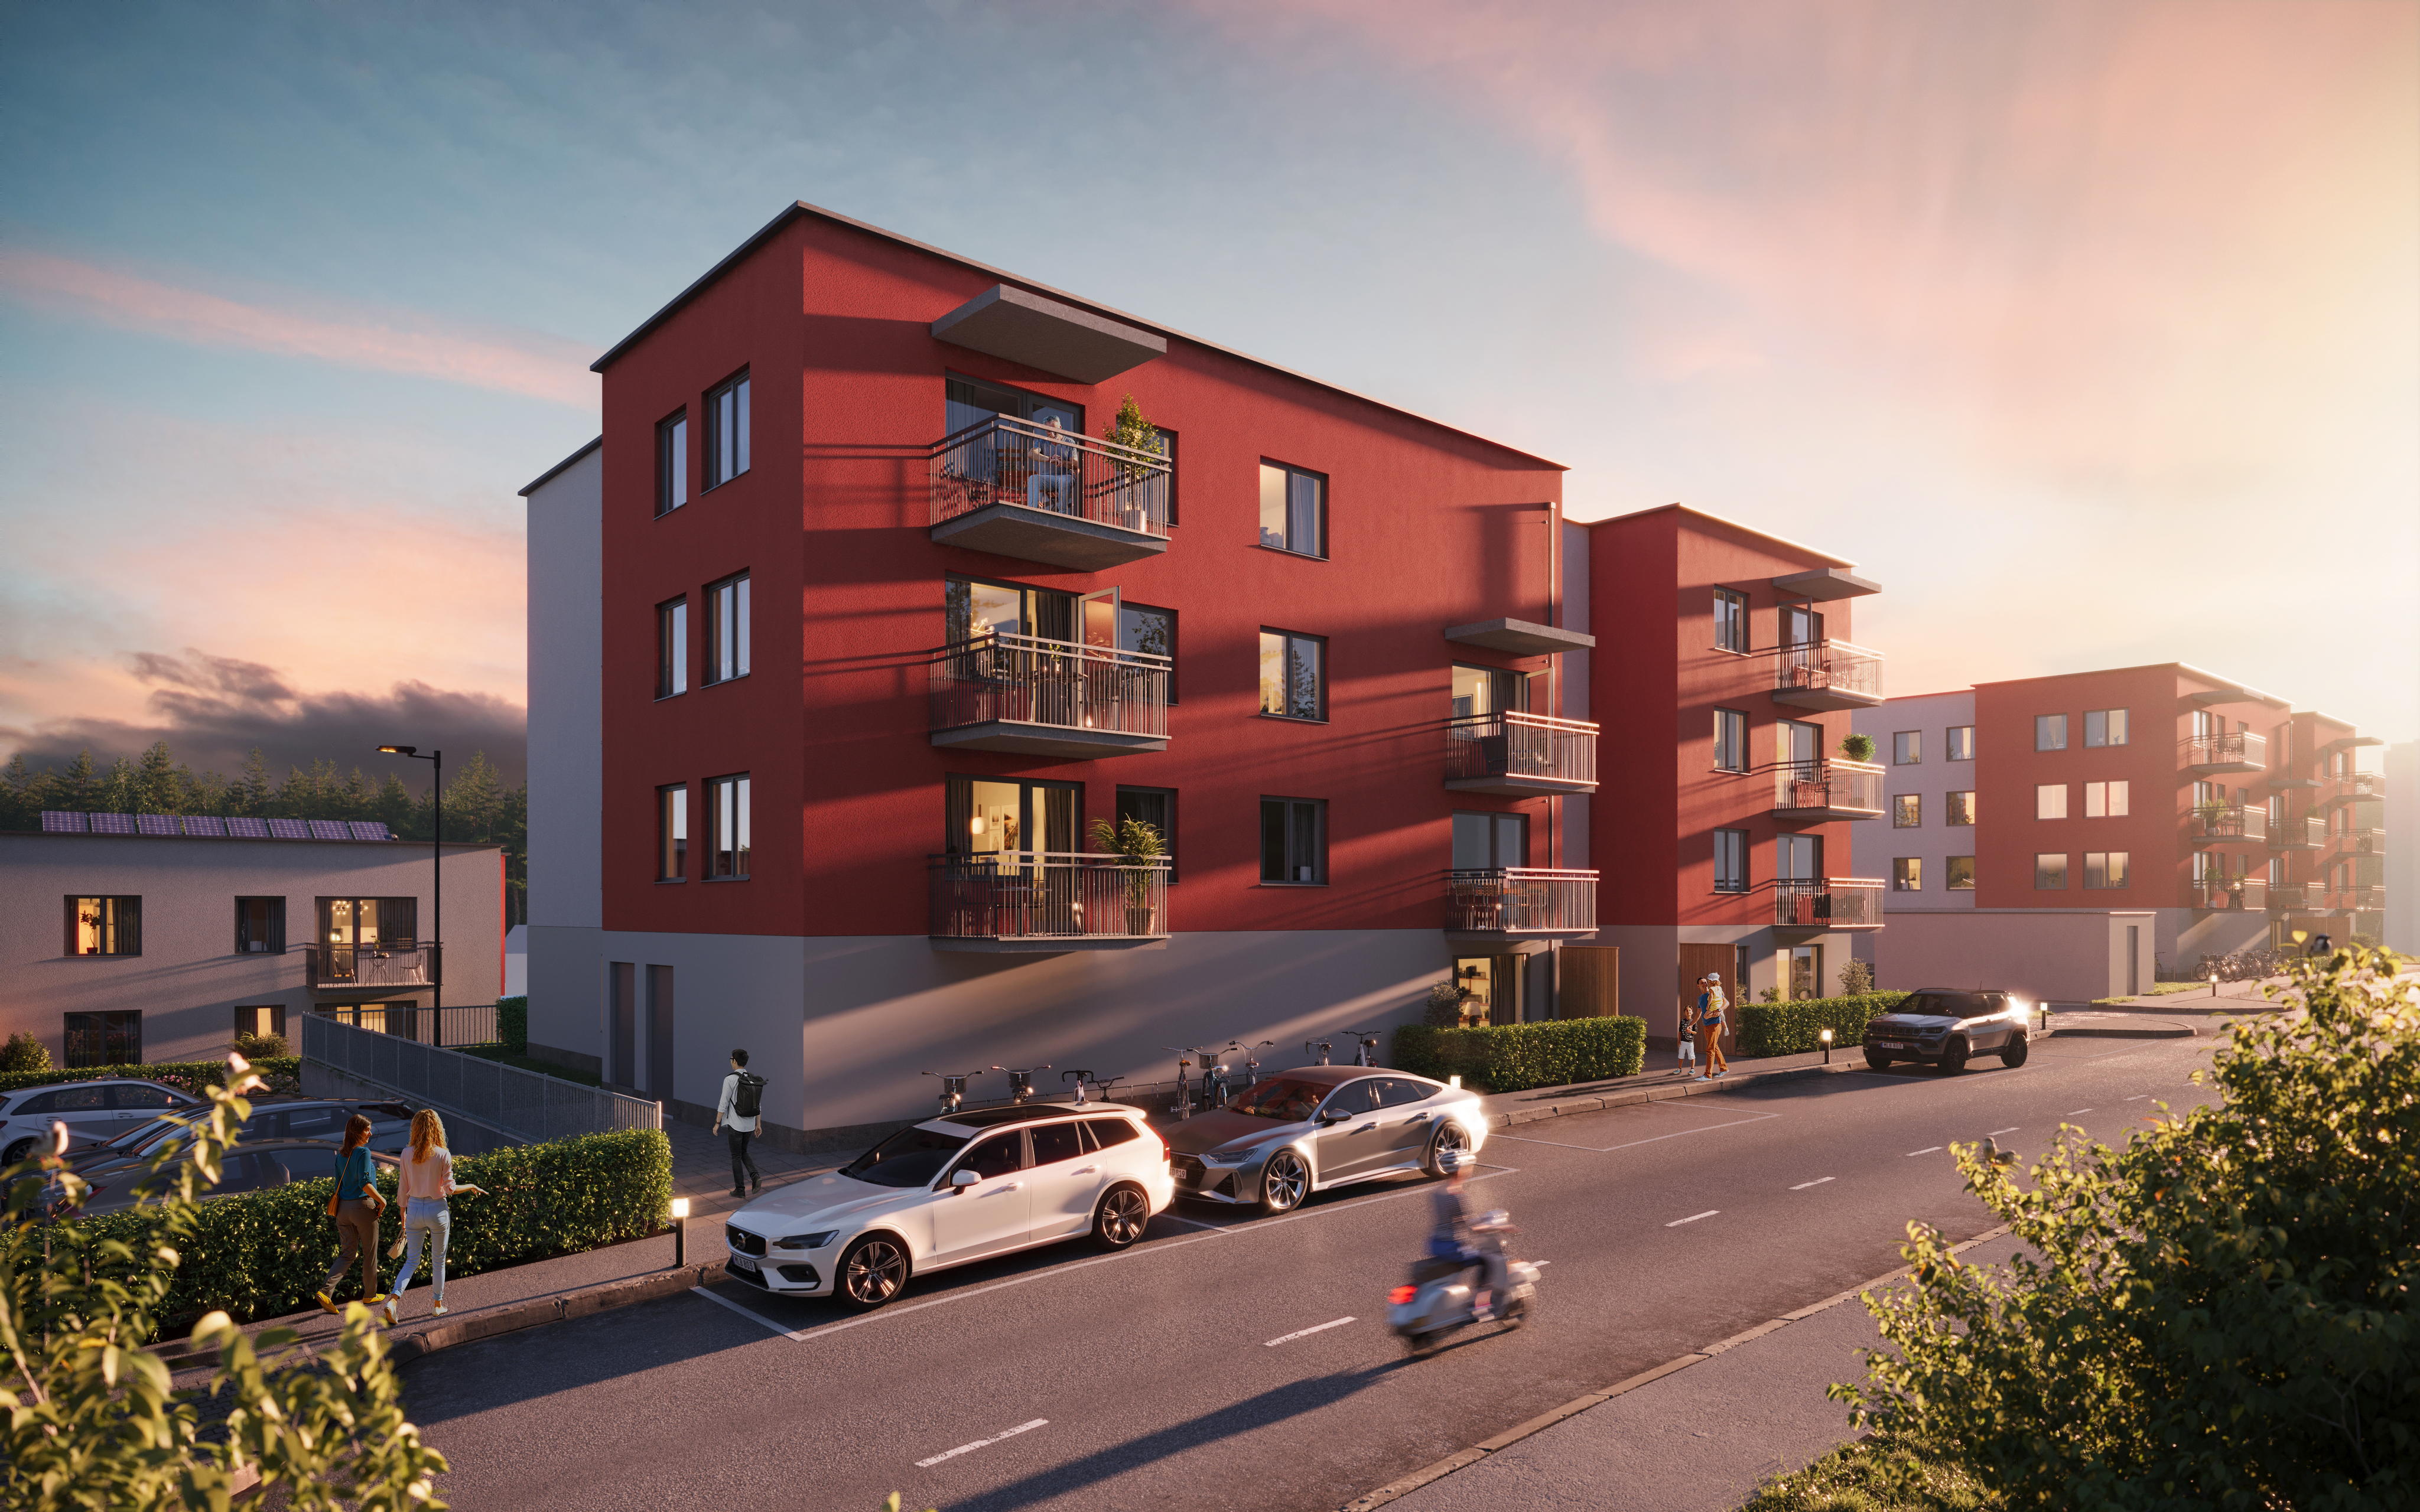 Illustration av nytt bostadsområde, trevåningshus med röd fasad, grönområde och en väg framför husen.